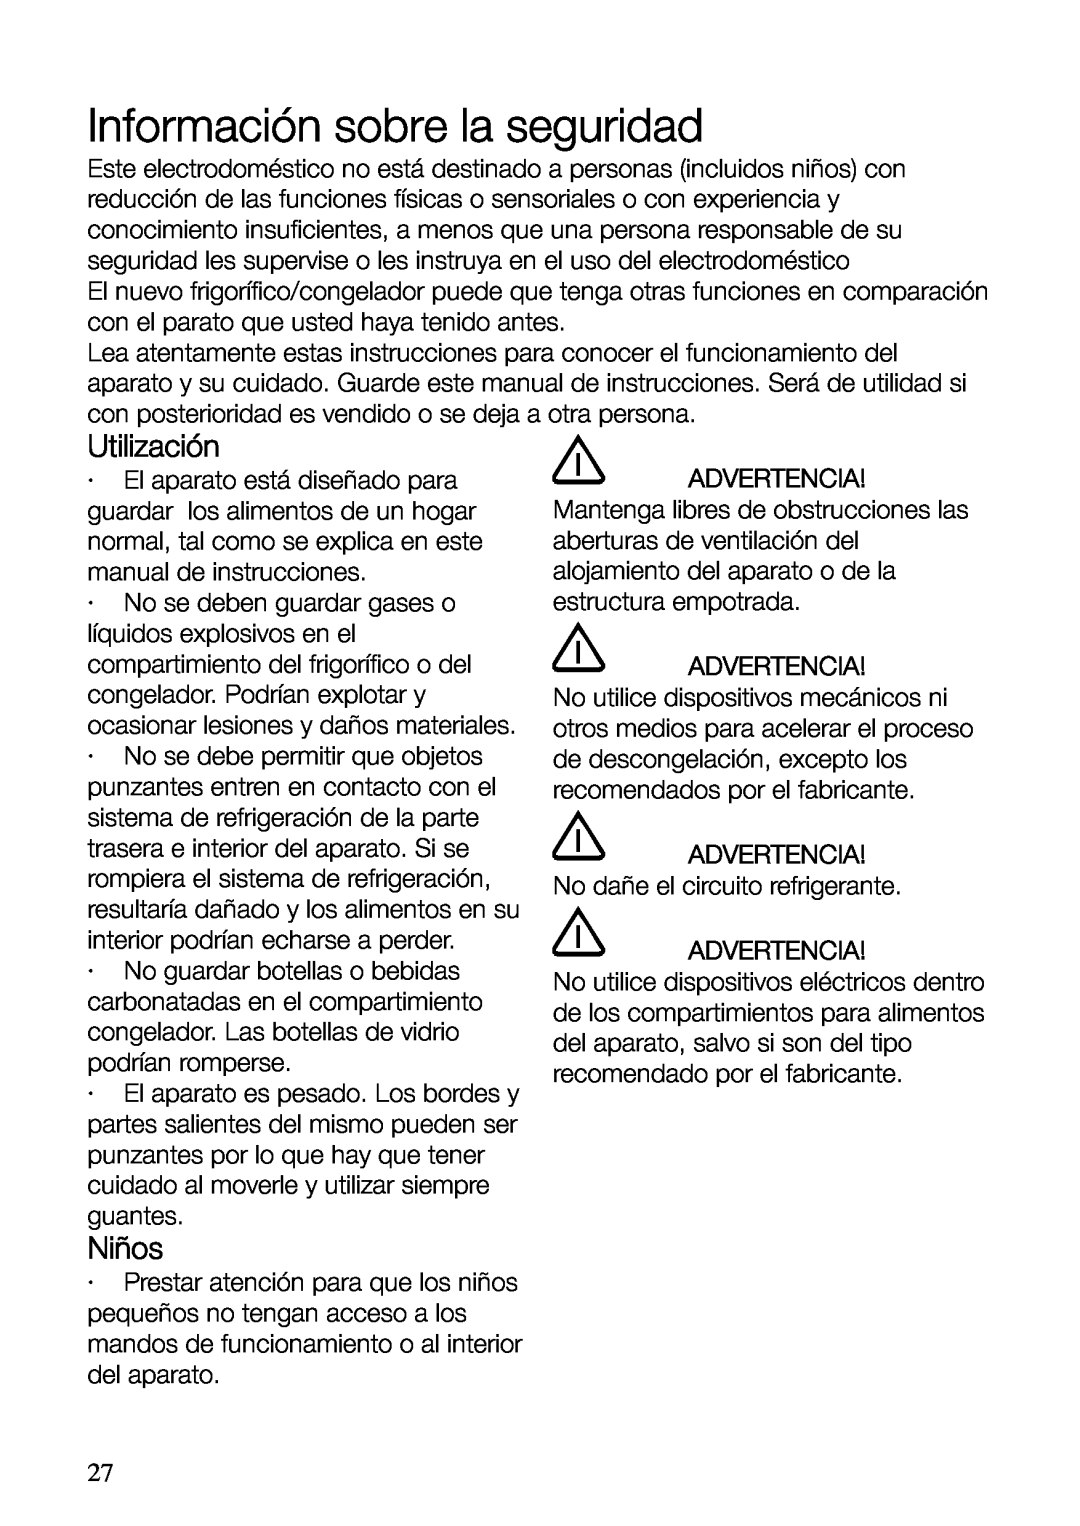 Electrolux ERF37800WX user manual Información sobre la seguridad, Utilización, Niños, Advertencia 